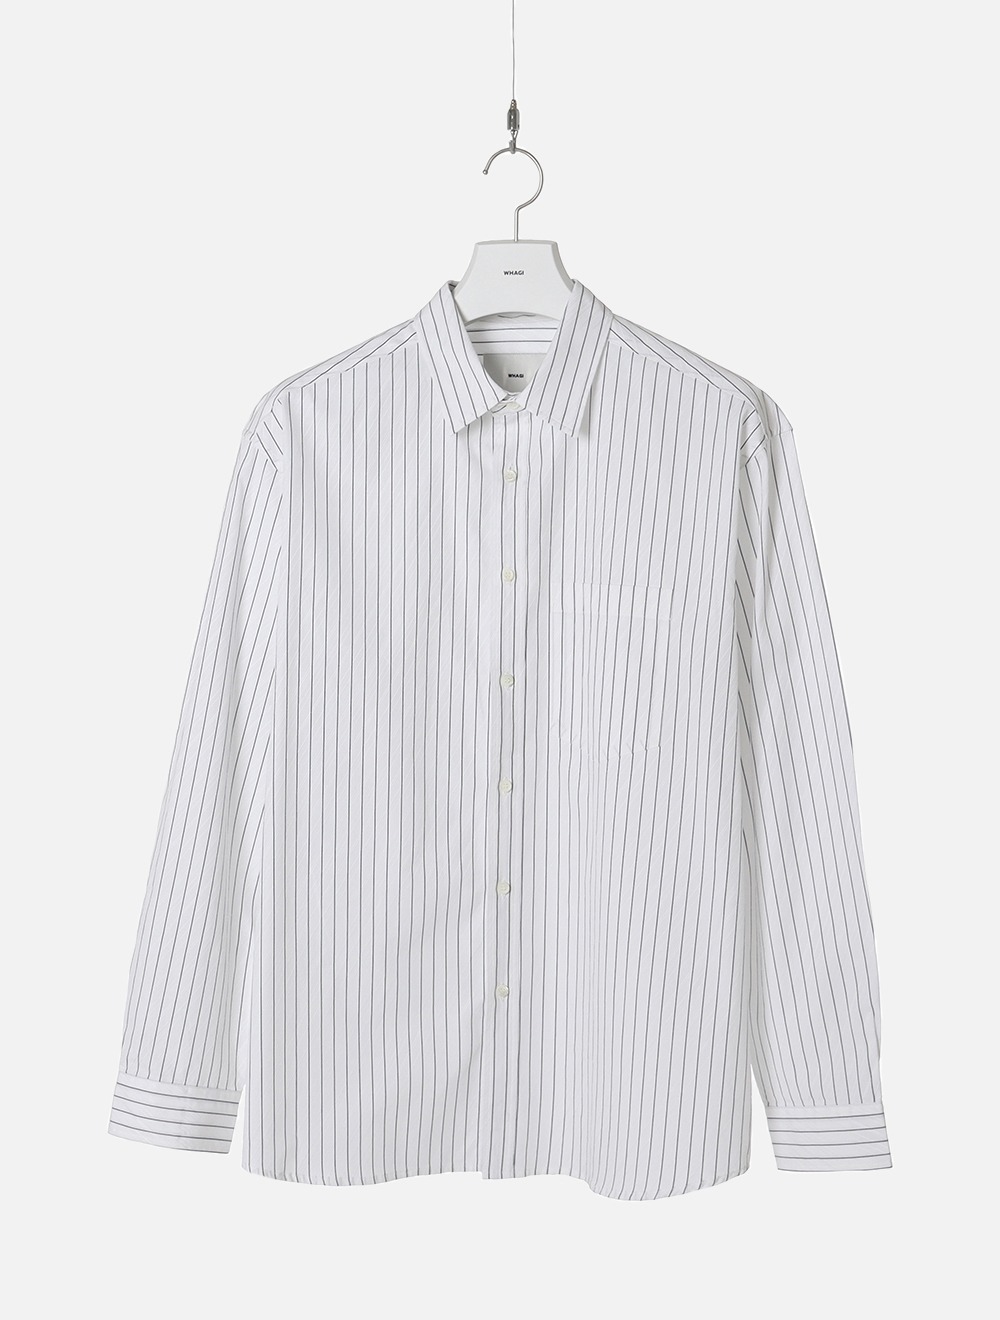 Architect Shirt (White Stripe)